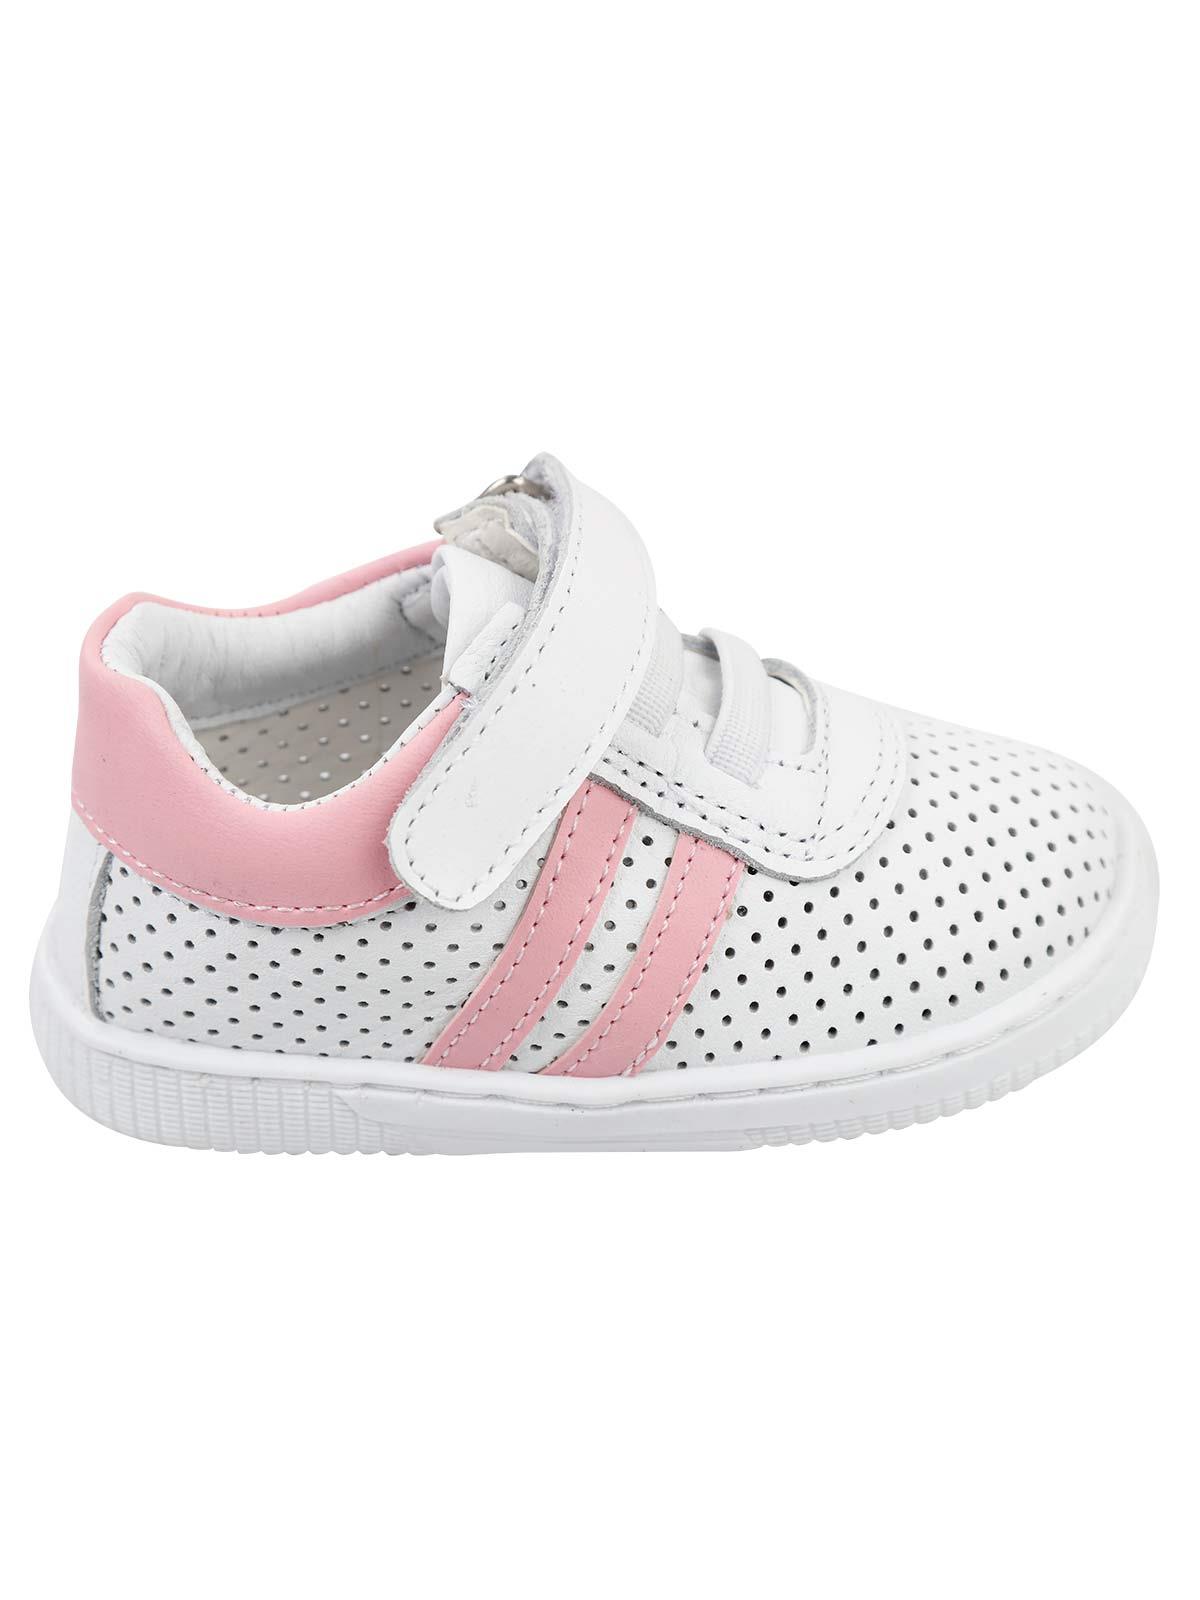 Baby Force Kız Bebek Deri İlkadım Ayakkabısı 19-22 Numara Beyaz-Fuşya